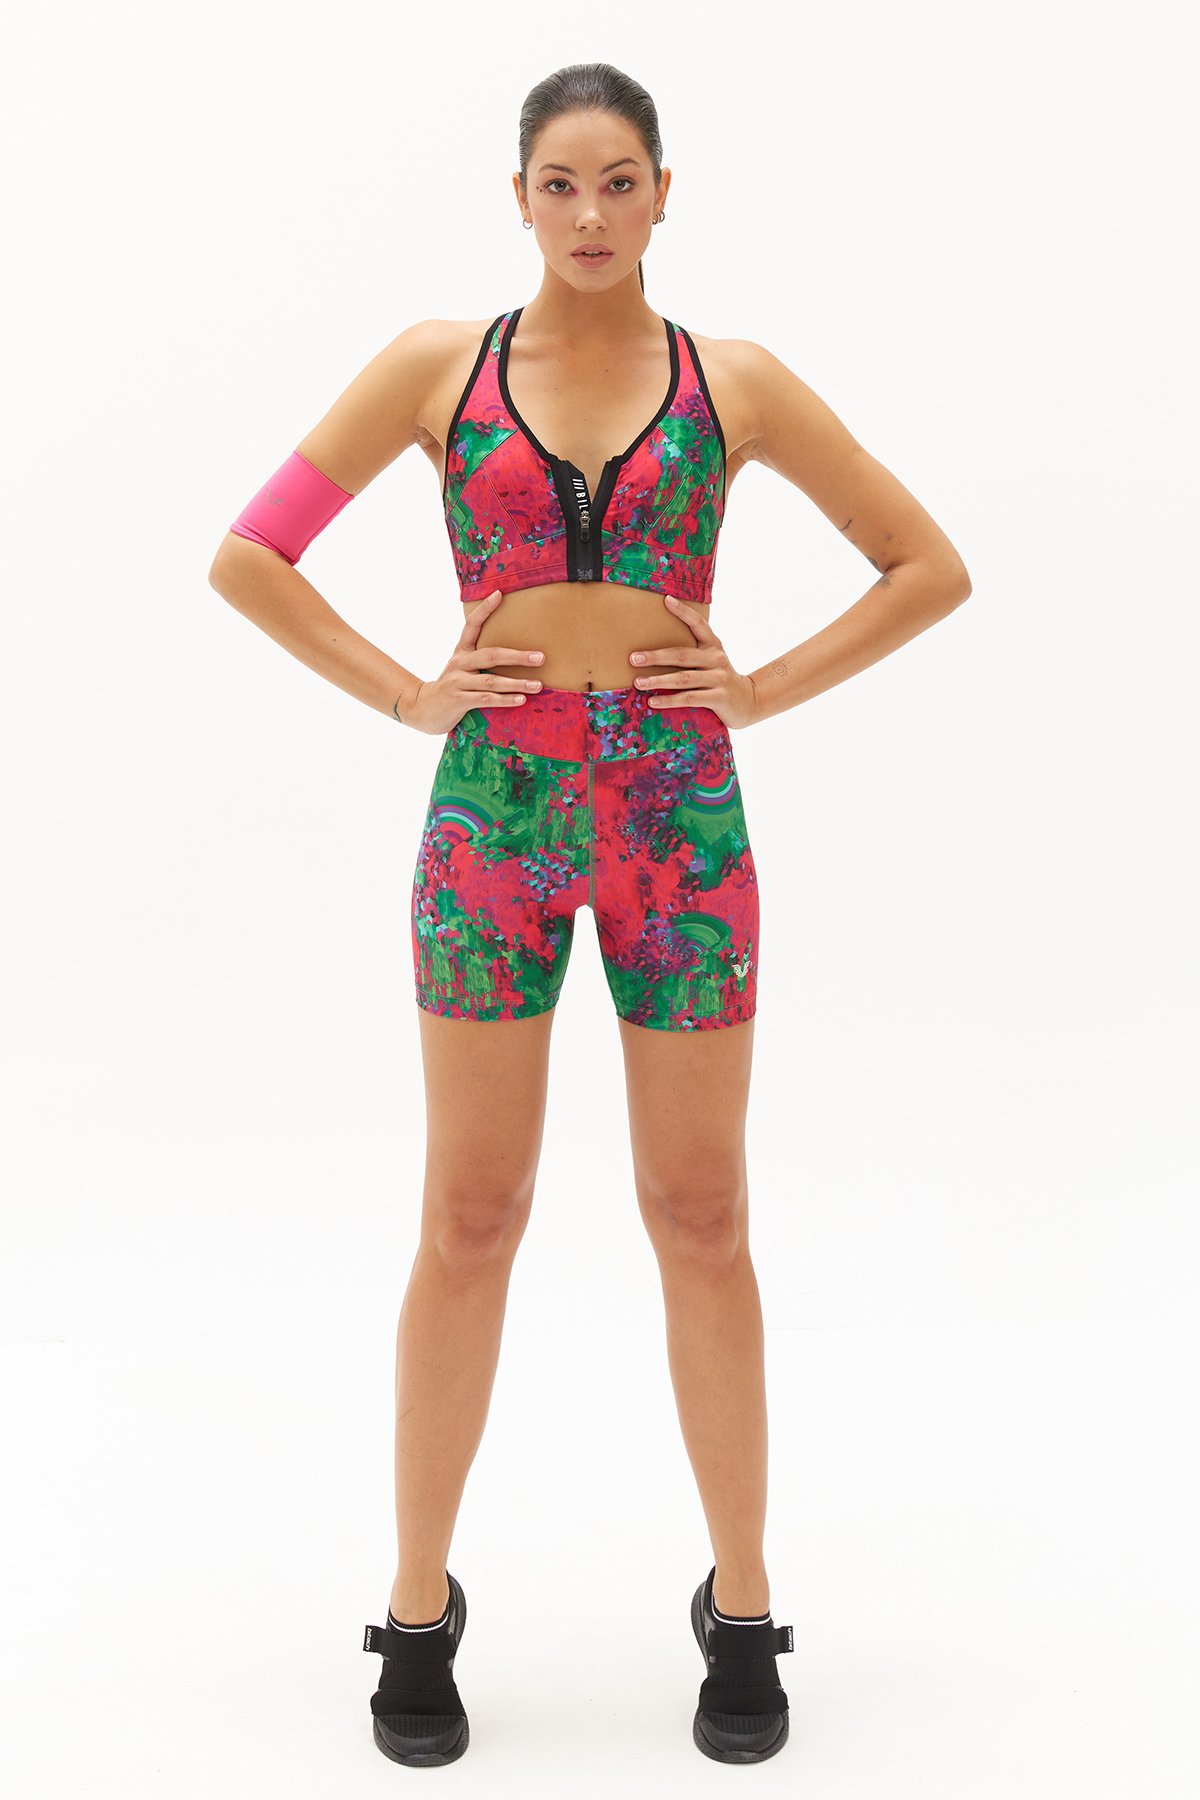 Kadın Spor Fashion Green Ocean Yüksek Bel Esnek ve Toparlayıcı Biker Kısa Sporcu Taytı 0751 - 8